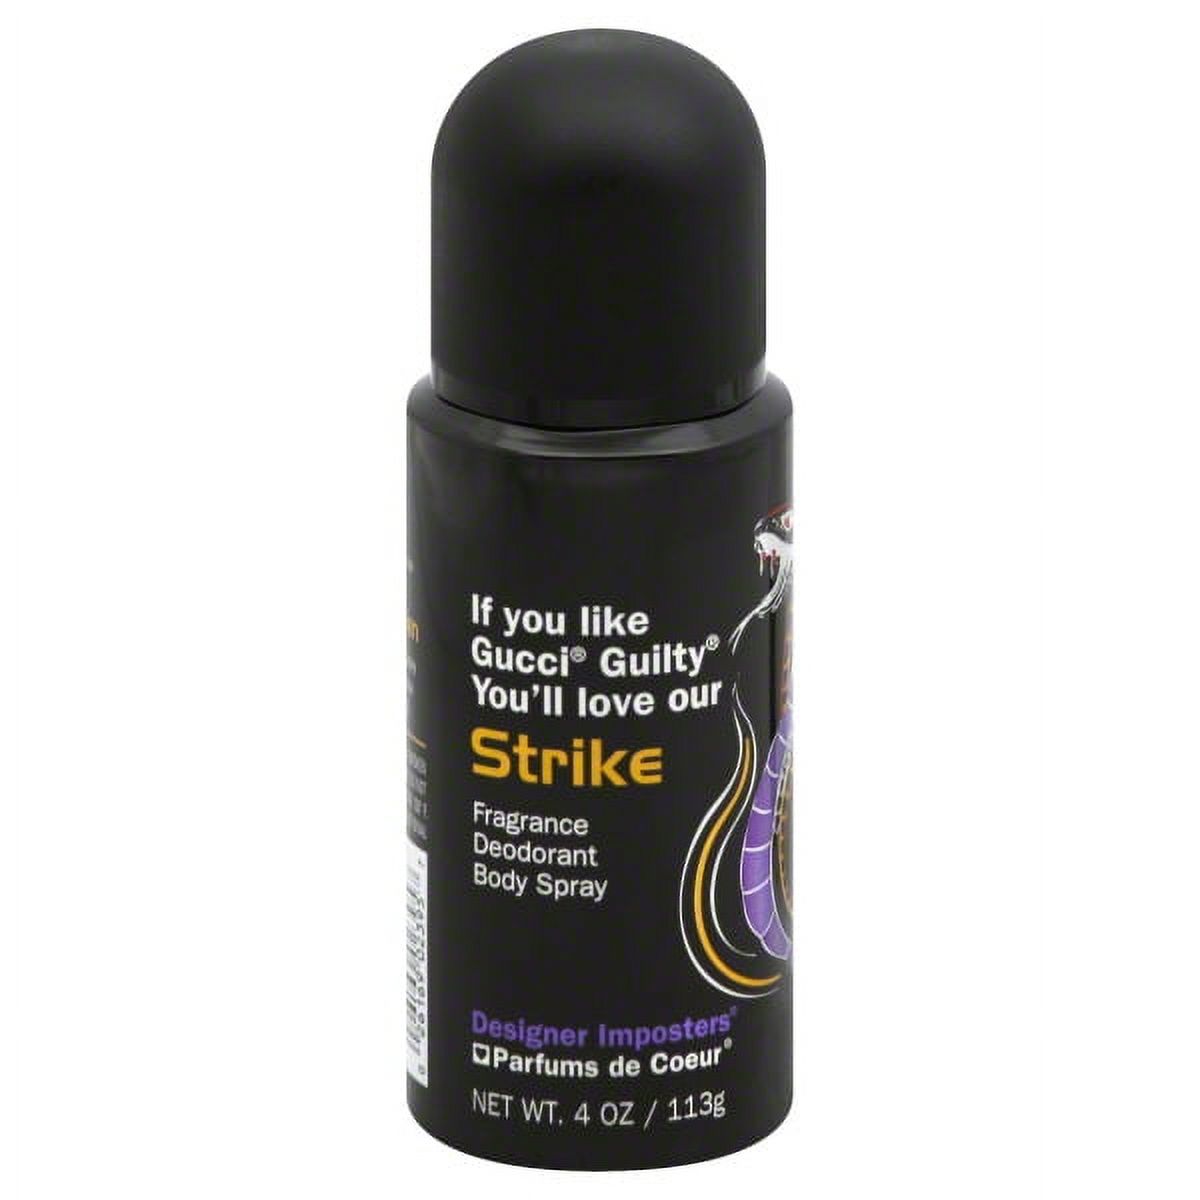 Designer Imposters Strike Fragrance Deodorant Body Spray, 4 oz - image 1 of 1